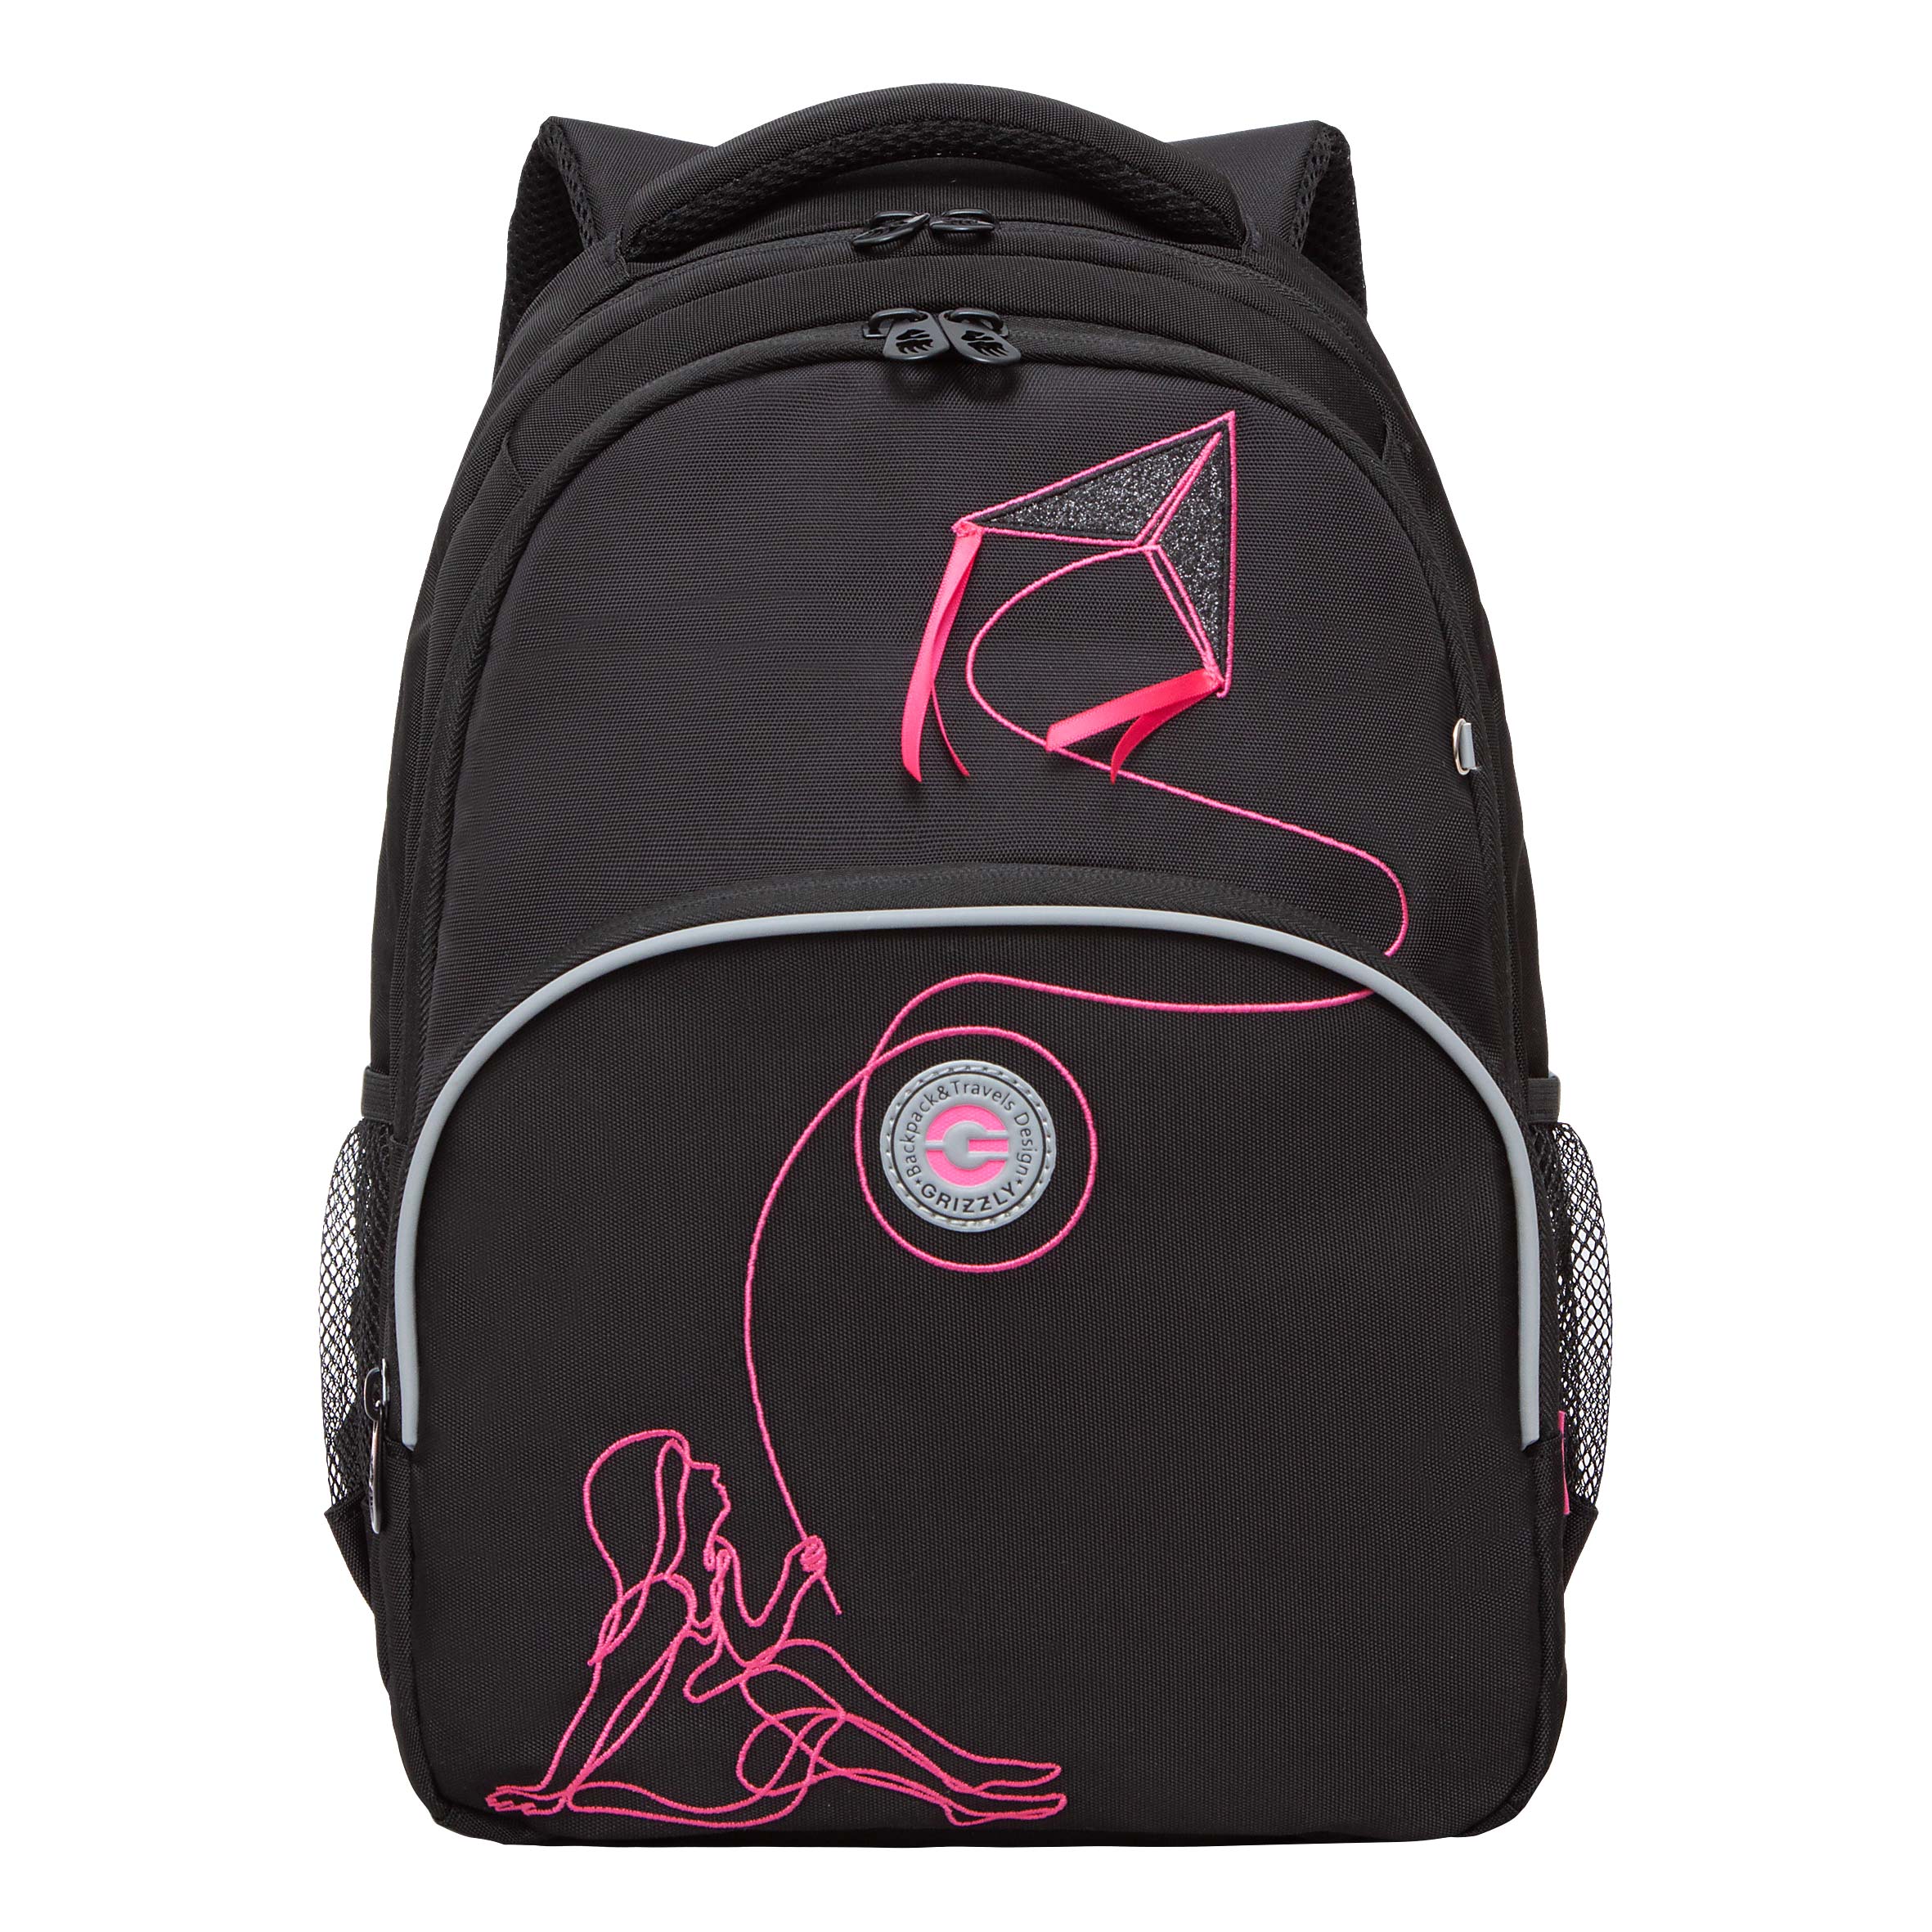 Рюкзак Grizzly школьный для девочки RG-360-8 1 черный - фуксия рюкзак grizzly школьный для девочки rd 341 1 2